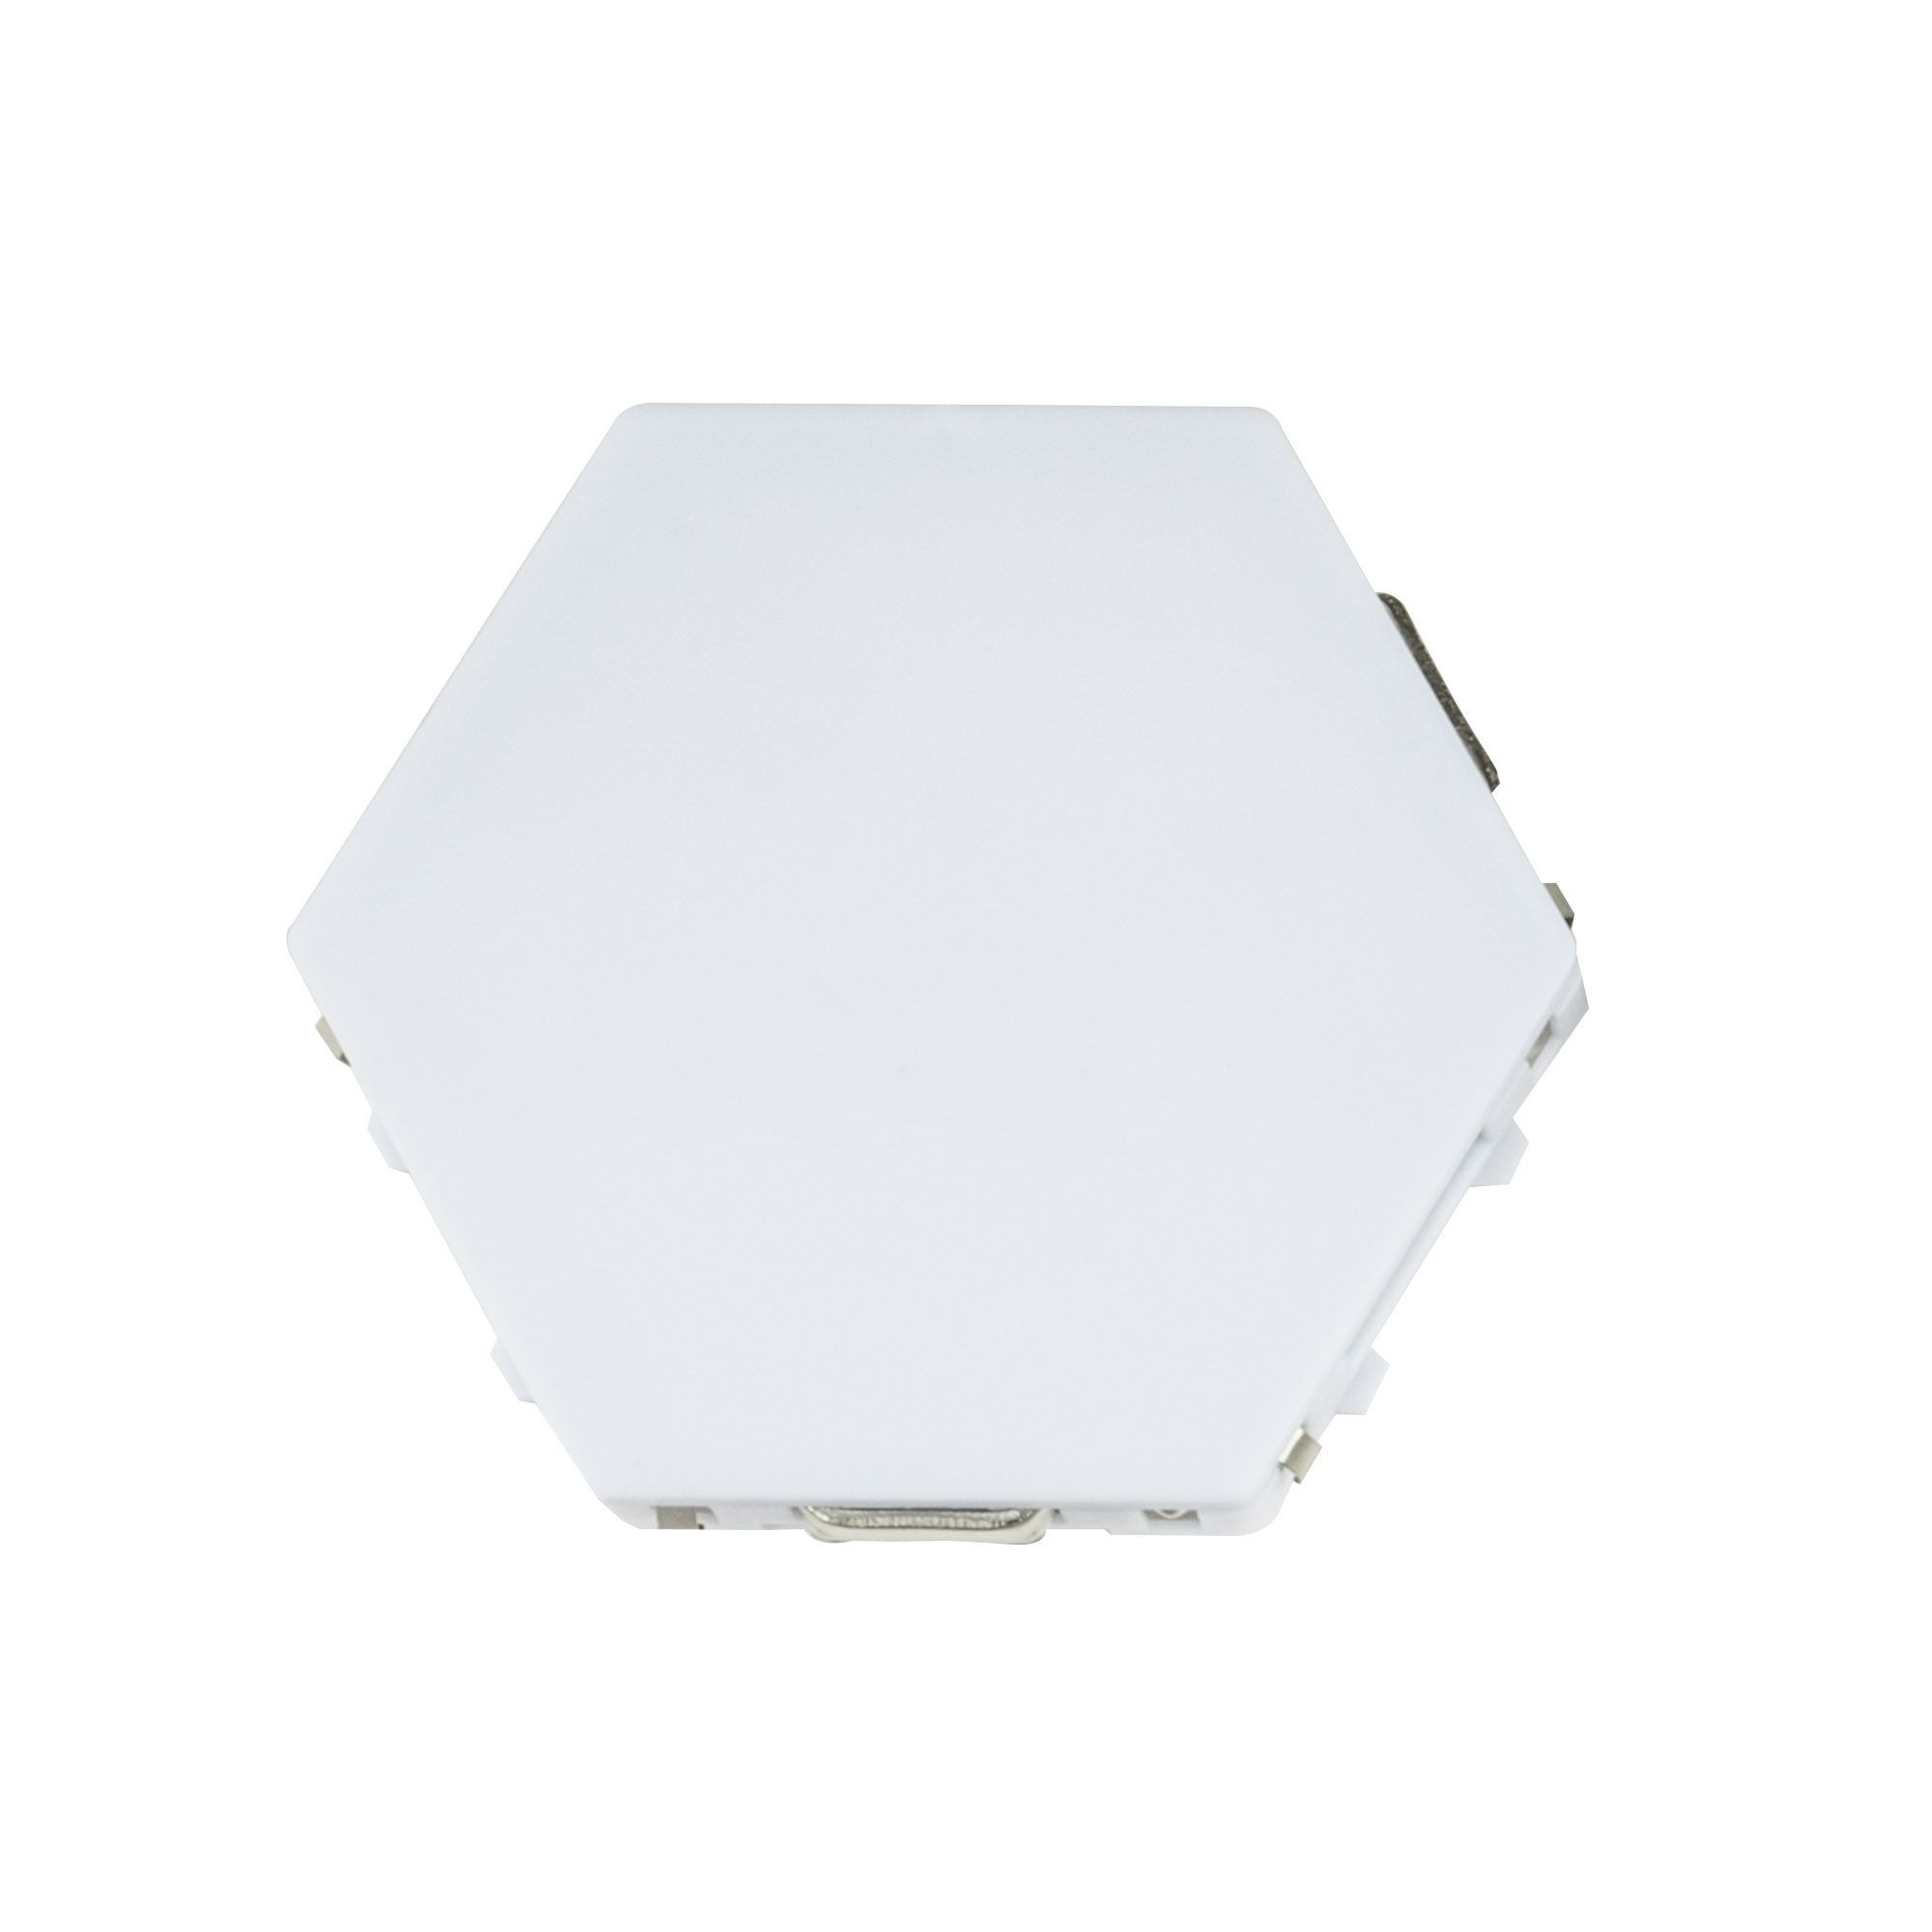 ULE-H77-3.5W-3000K-12V WHITE Cветильник светодиодный модульный. Сенсорный. Теплый белый свет3000К. 72Лм. TM Uniel